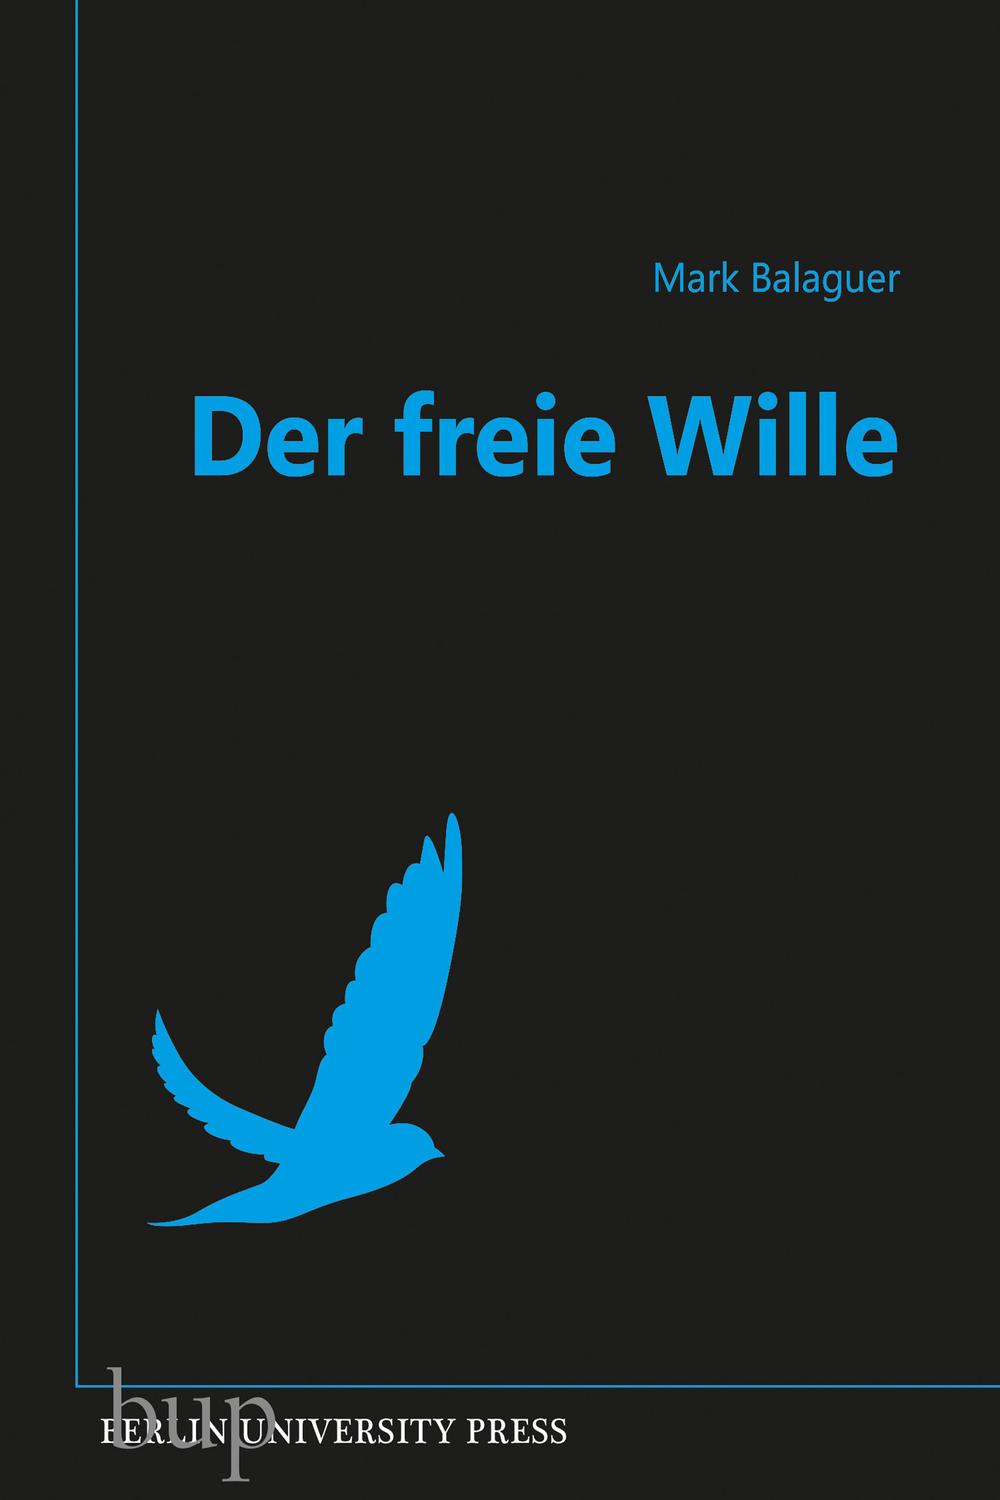 Der freie Wille - Mark, Prof. Ph.D. Balaguer